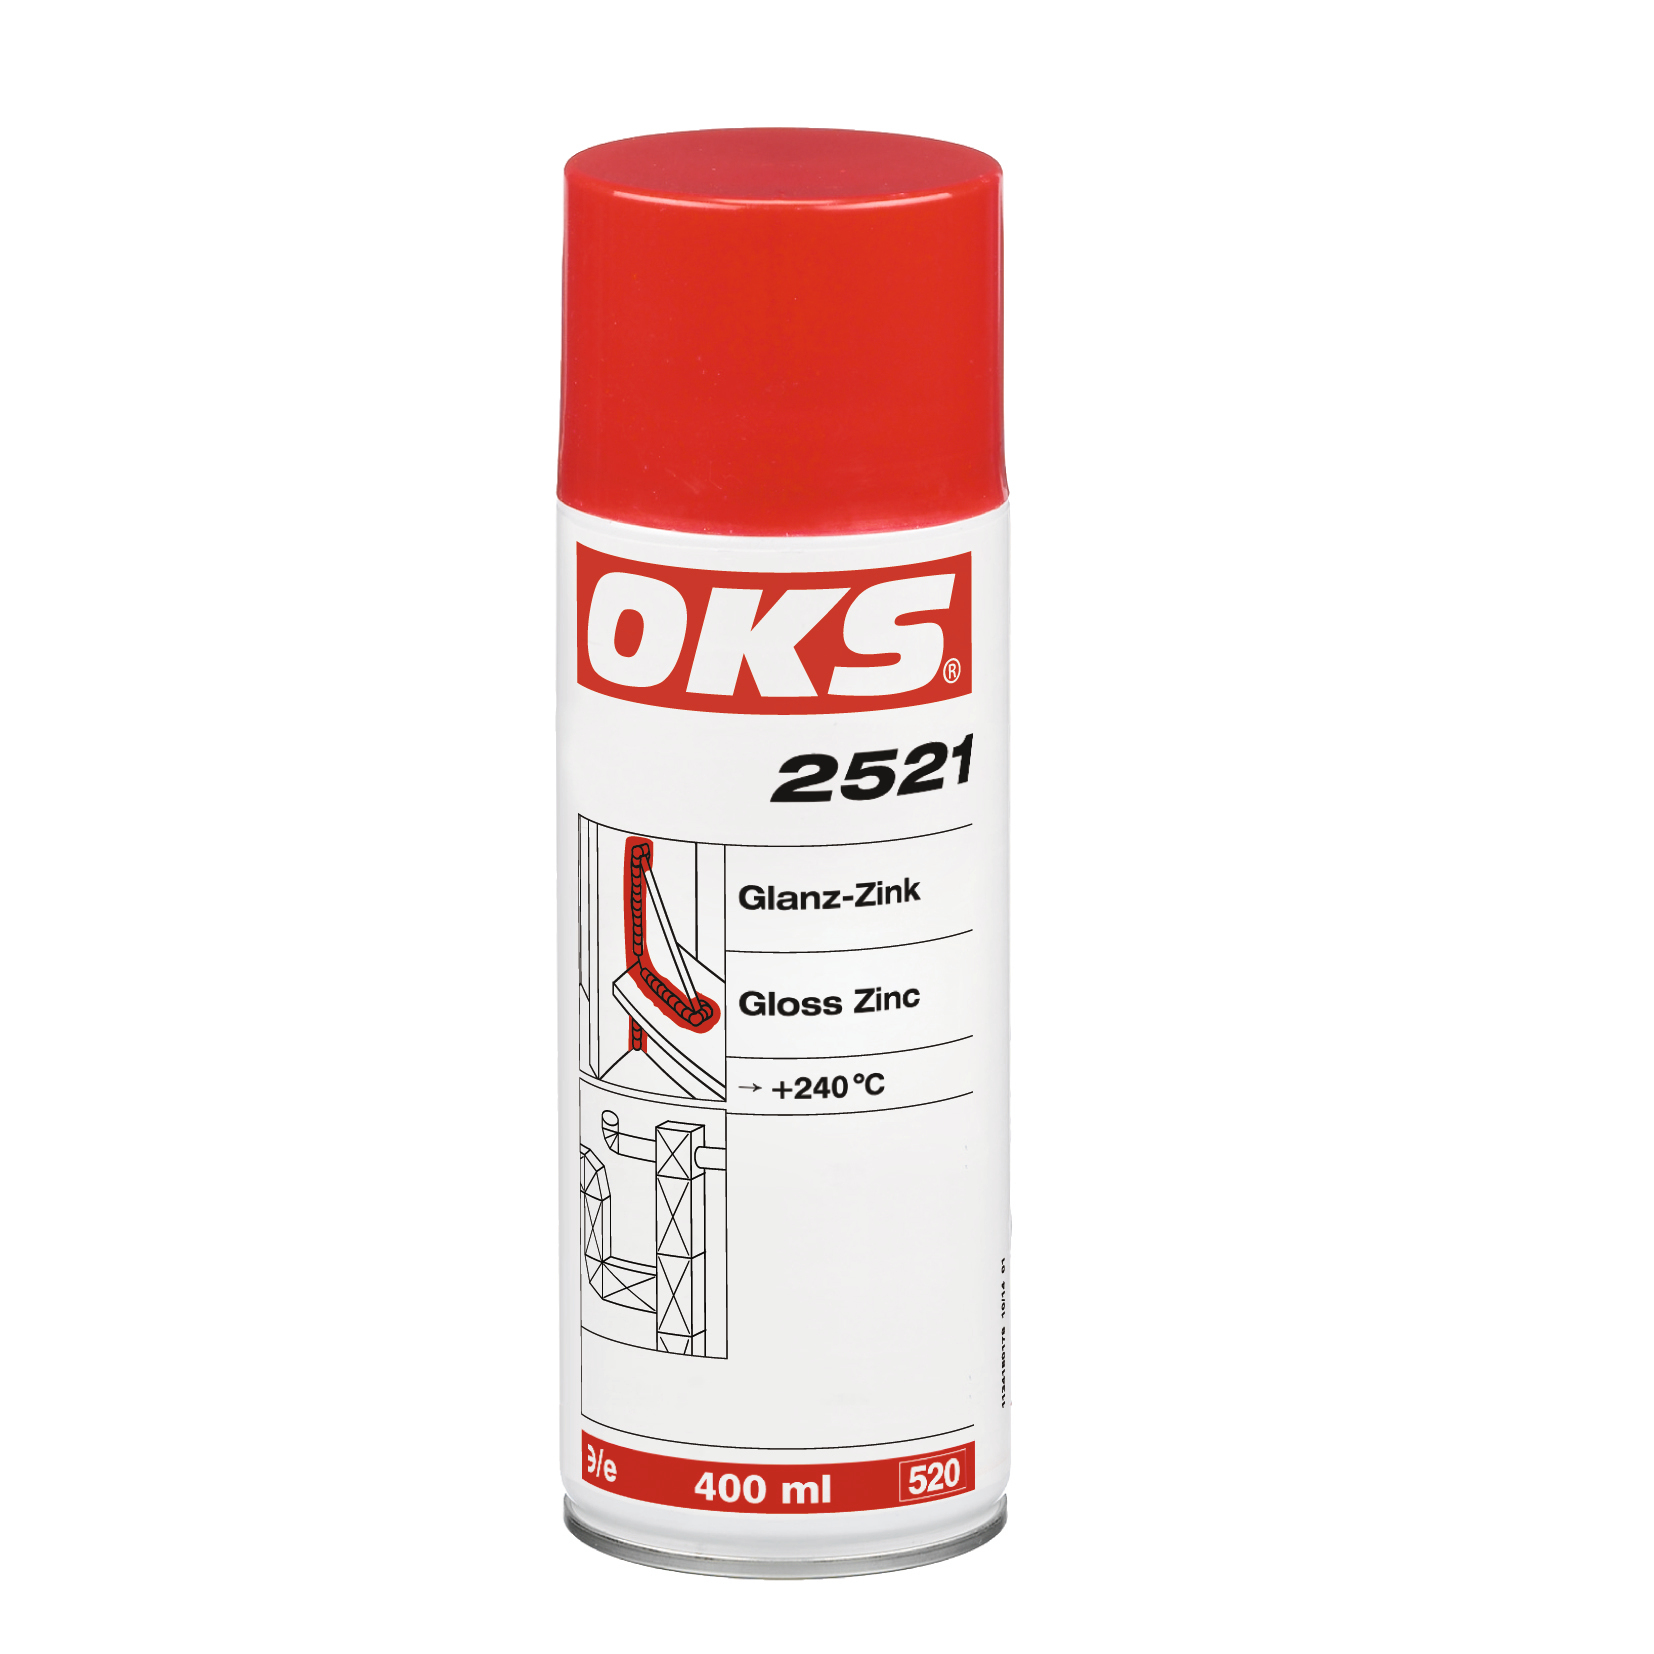 OKS2521-400ML Decoratieve corrosiebescherming op basis van zink- en aluminiumpoeder als tweede laag over zinksprays (bv. OKS 2511) voor de vorming van een weerbestendig oppervlak met aluminiumglans.